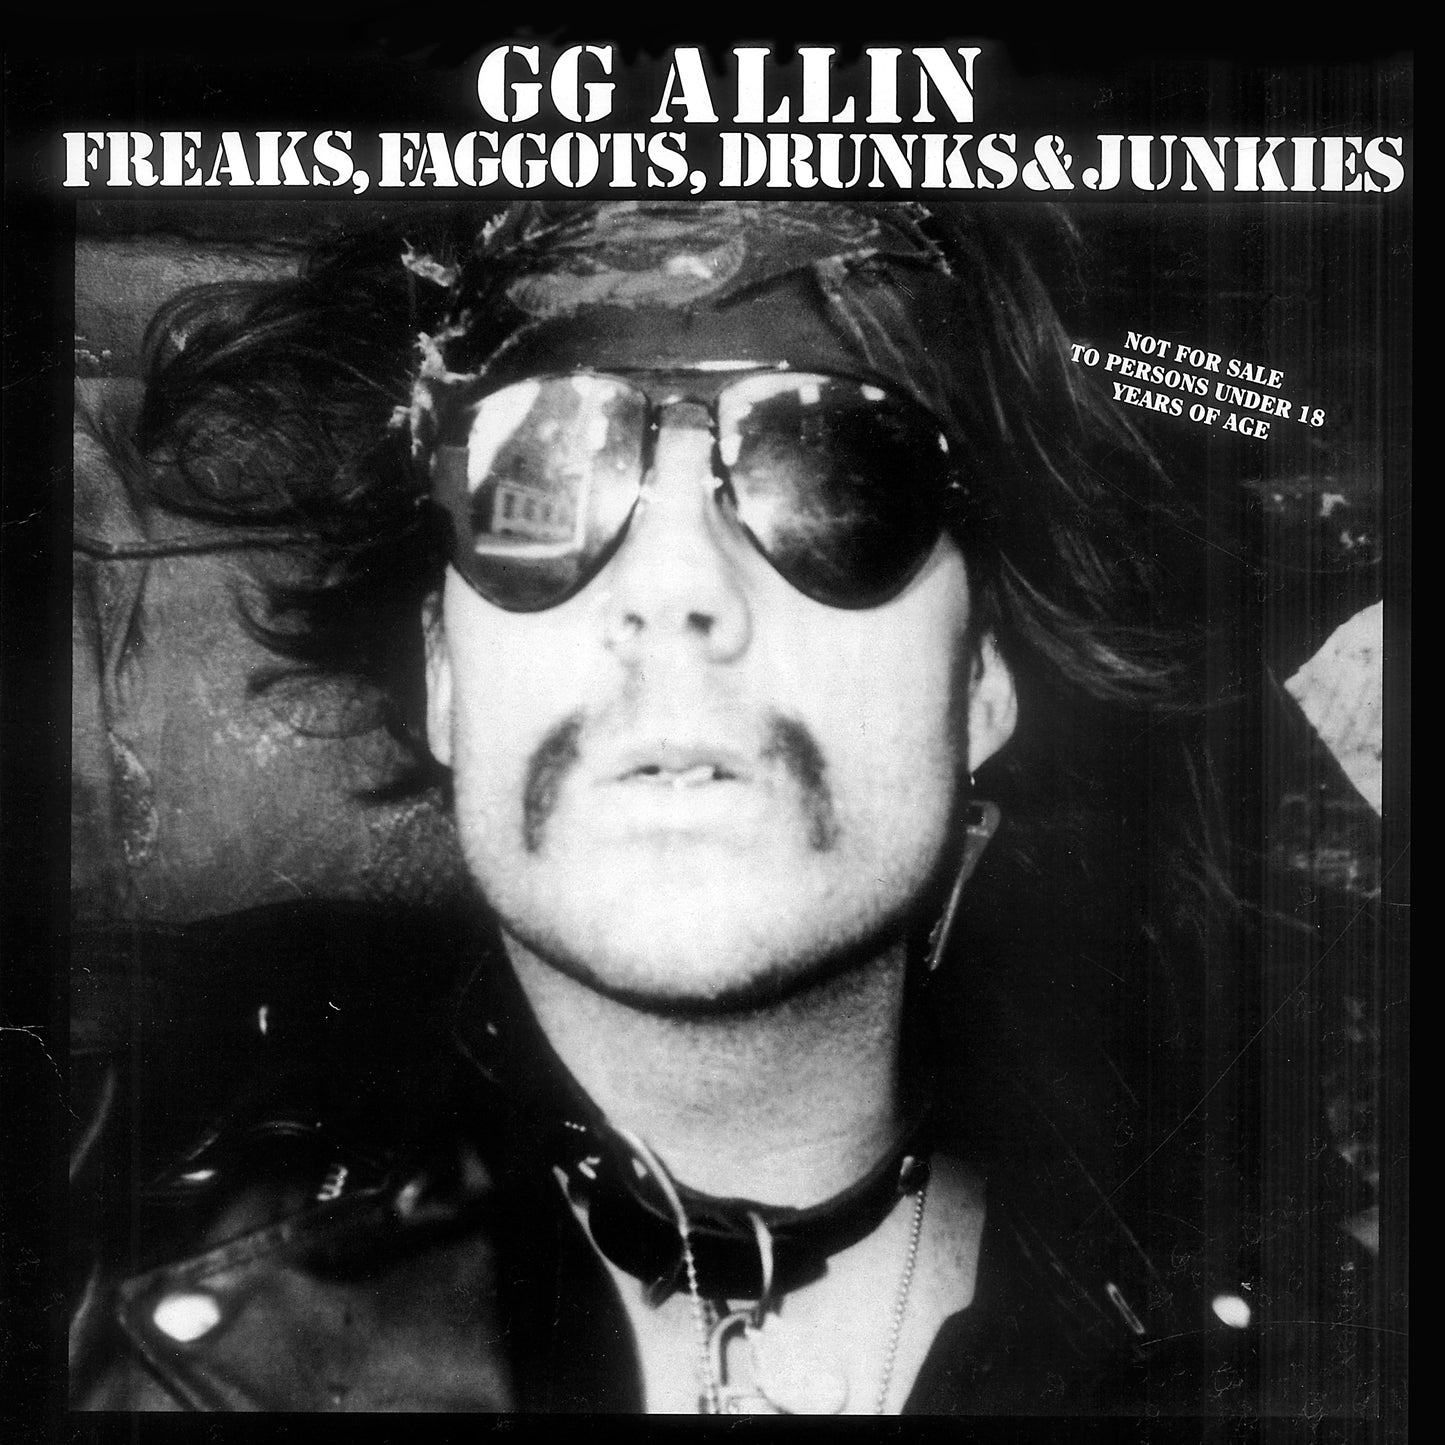 GG Allin "Freaks, Faggots, Drunks & Junkies" LP